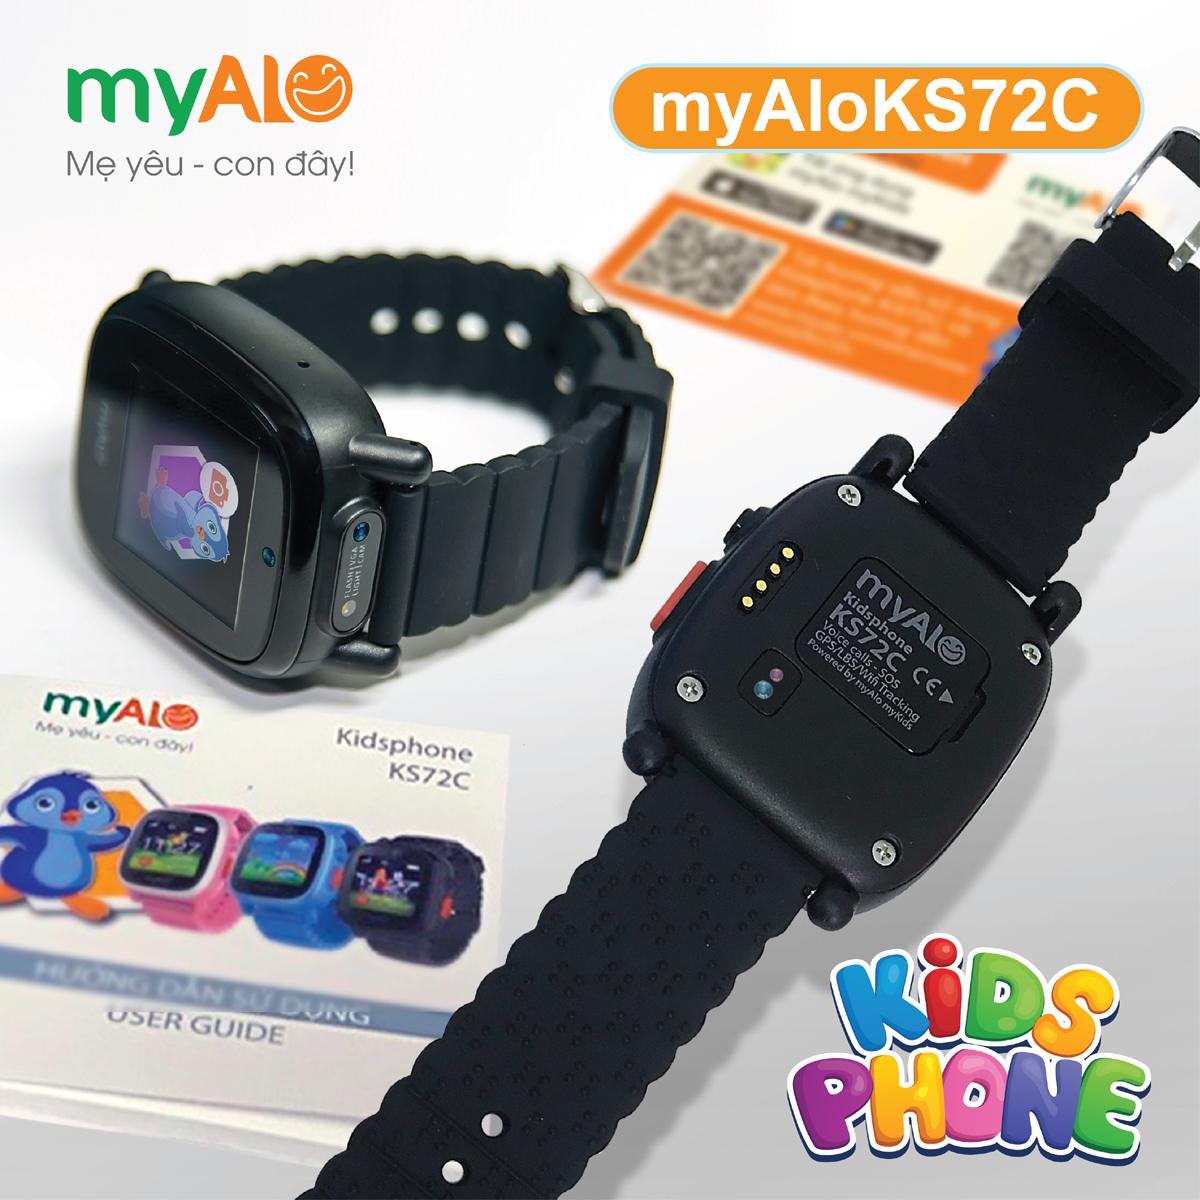 Đồng hồ myAlo KS72C màu đen